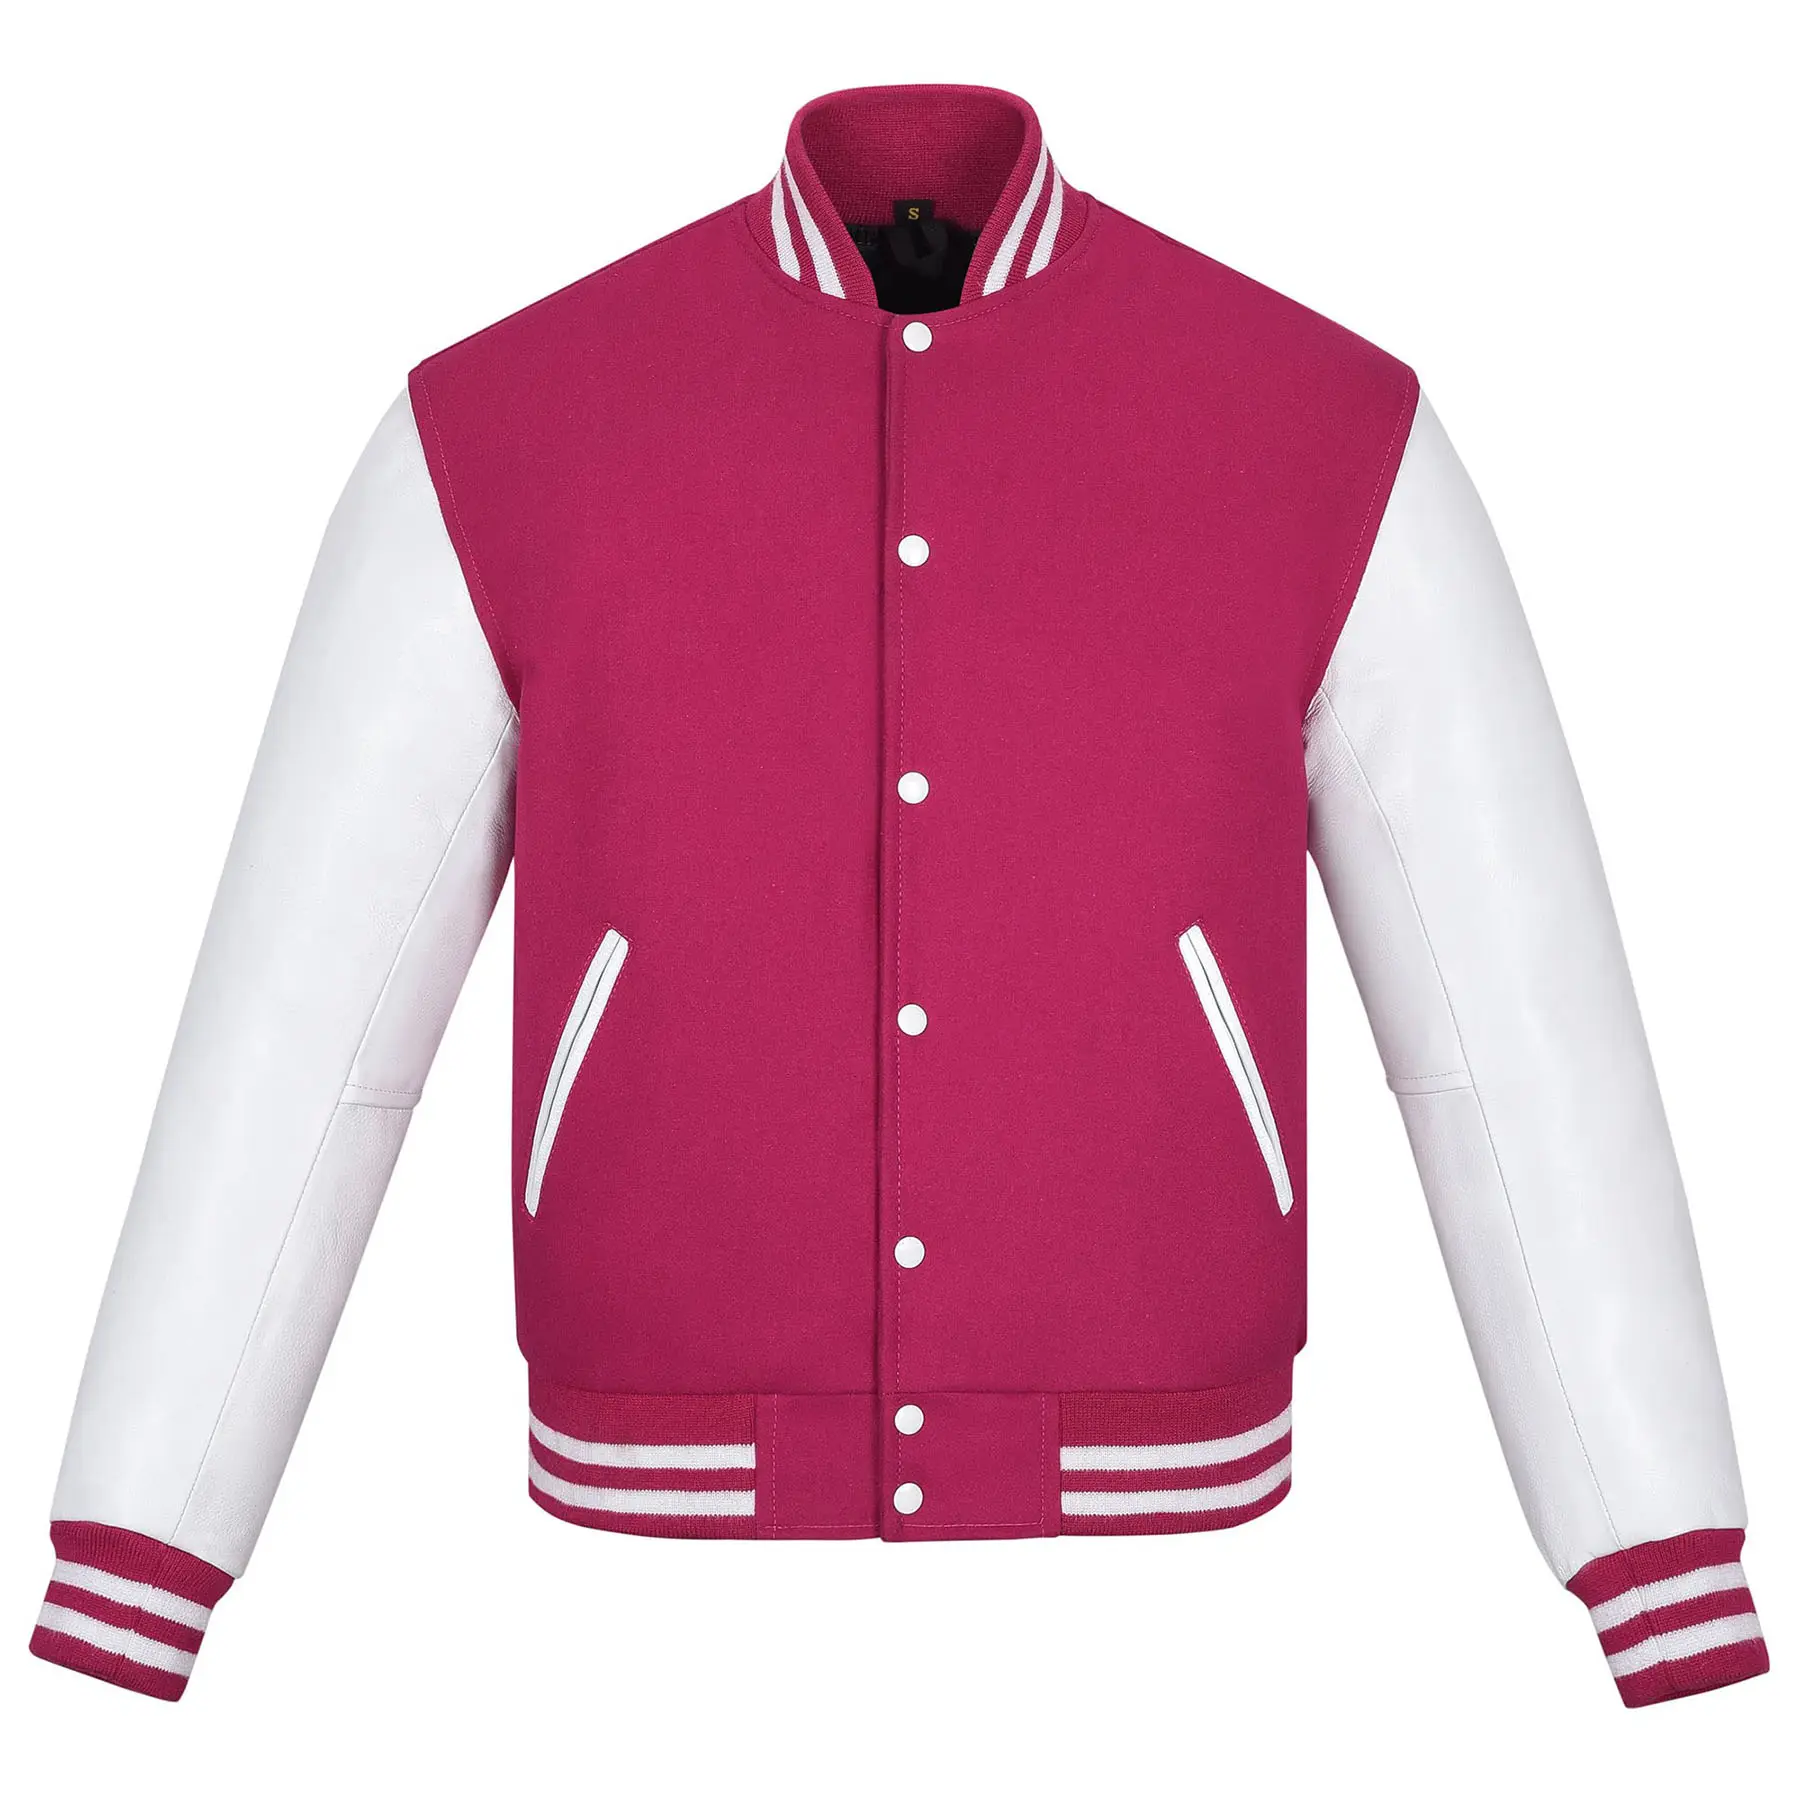 로고 인쇄 된 멘 대표팀 재킷 브랜드 다운 야구 재킷 맞춤 자수 로고 겨울 대표팀 재킷